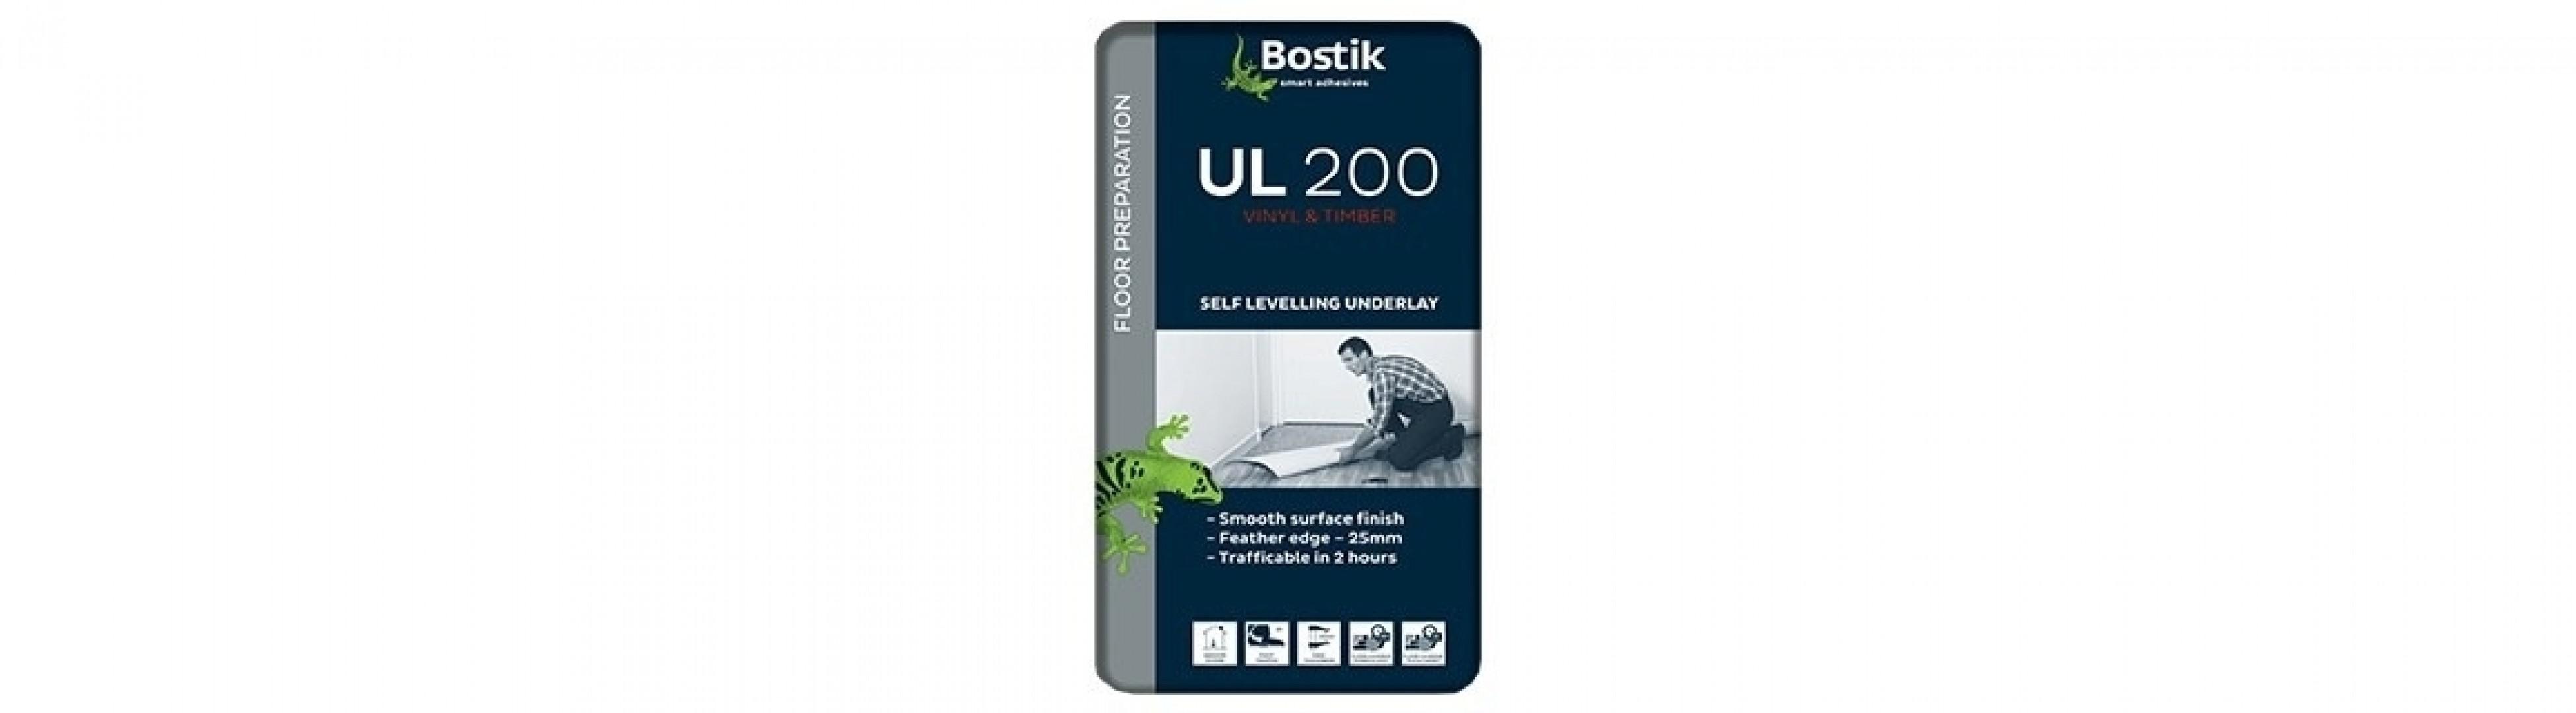 Ul 200 from Bostik